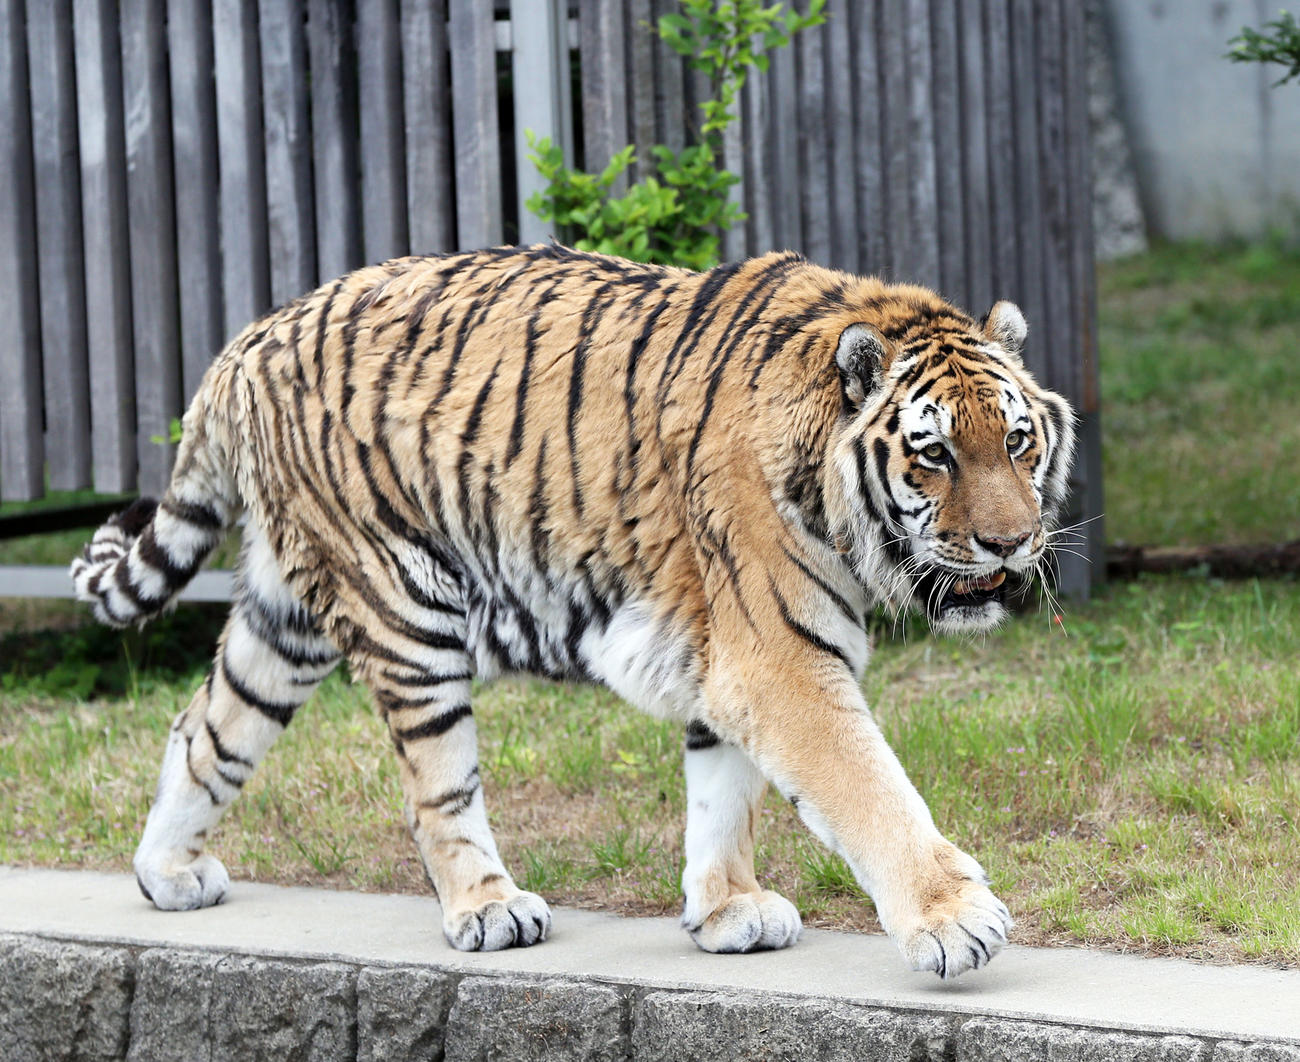 営業が再開された大阪・天王寺動物園では、アムールトラのセンイチが来園者に元気な姿を見せる（撮影・前田充）